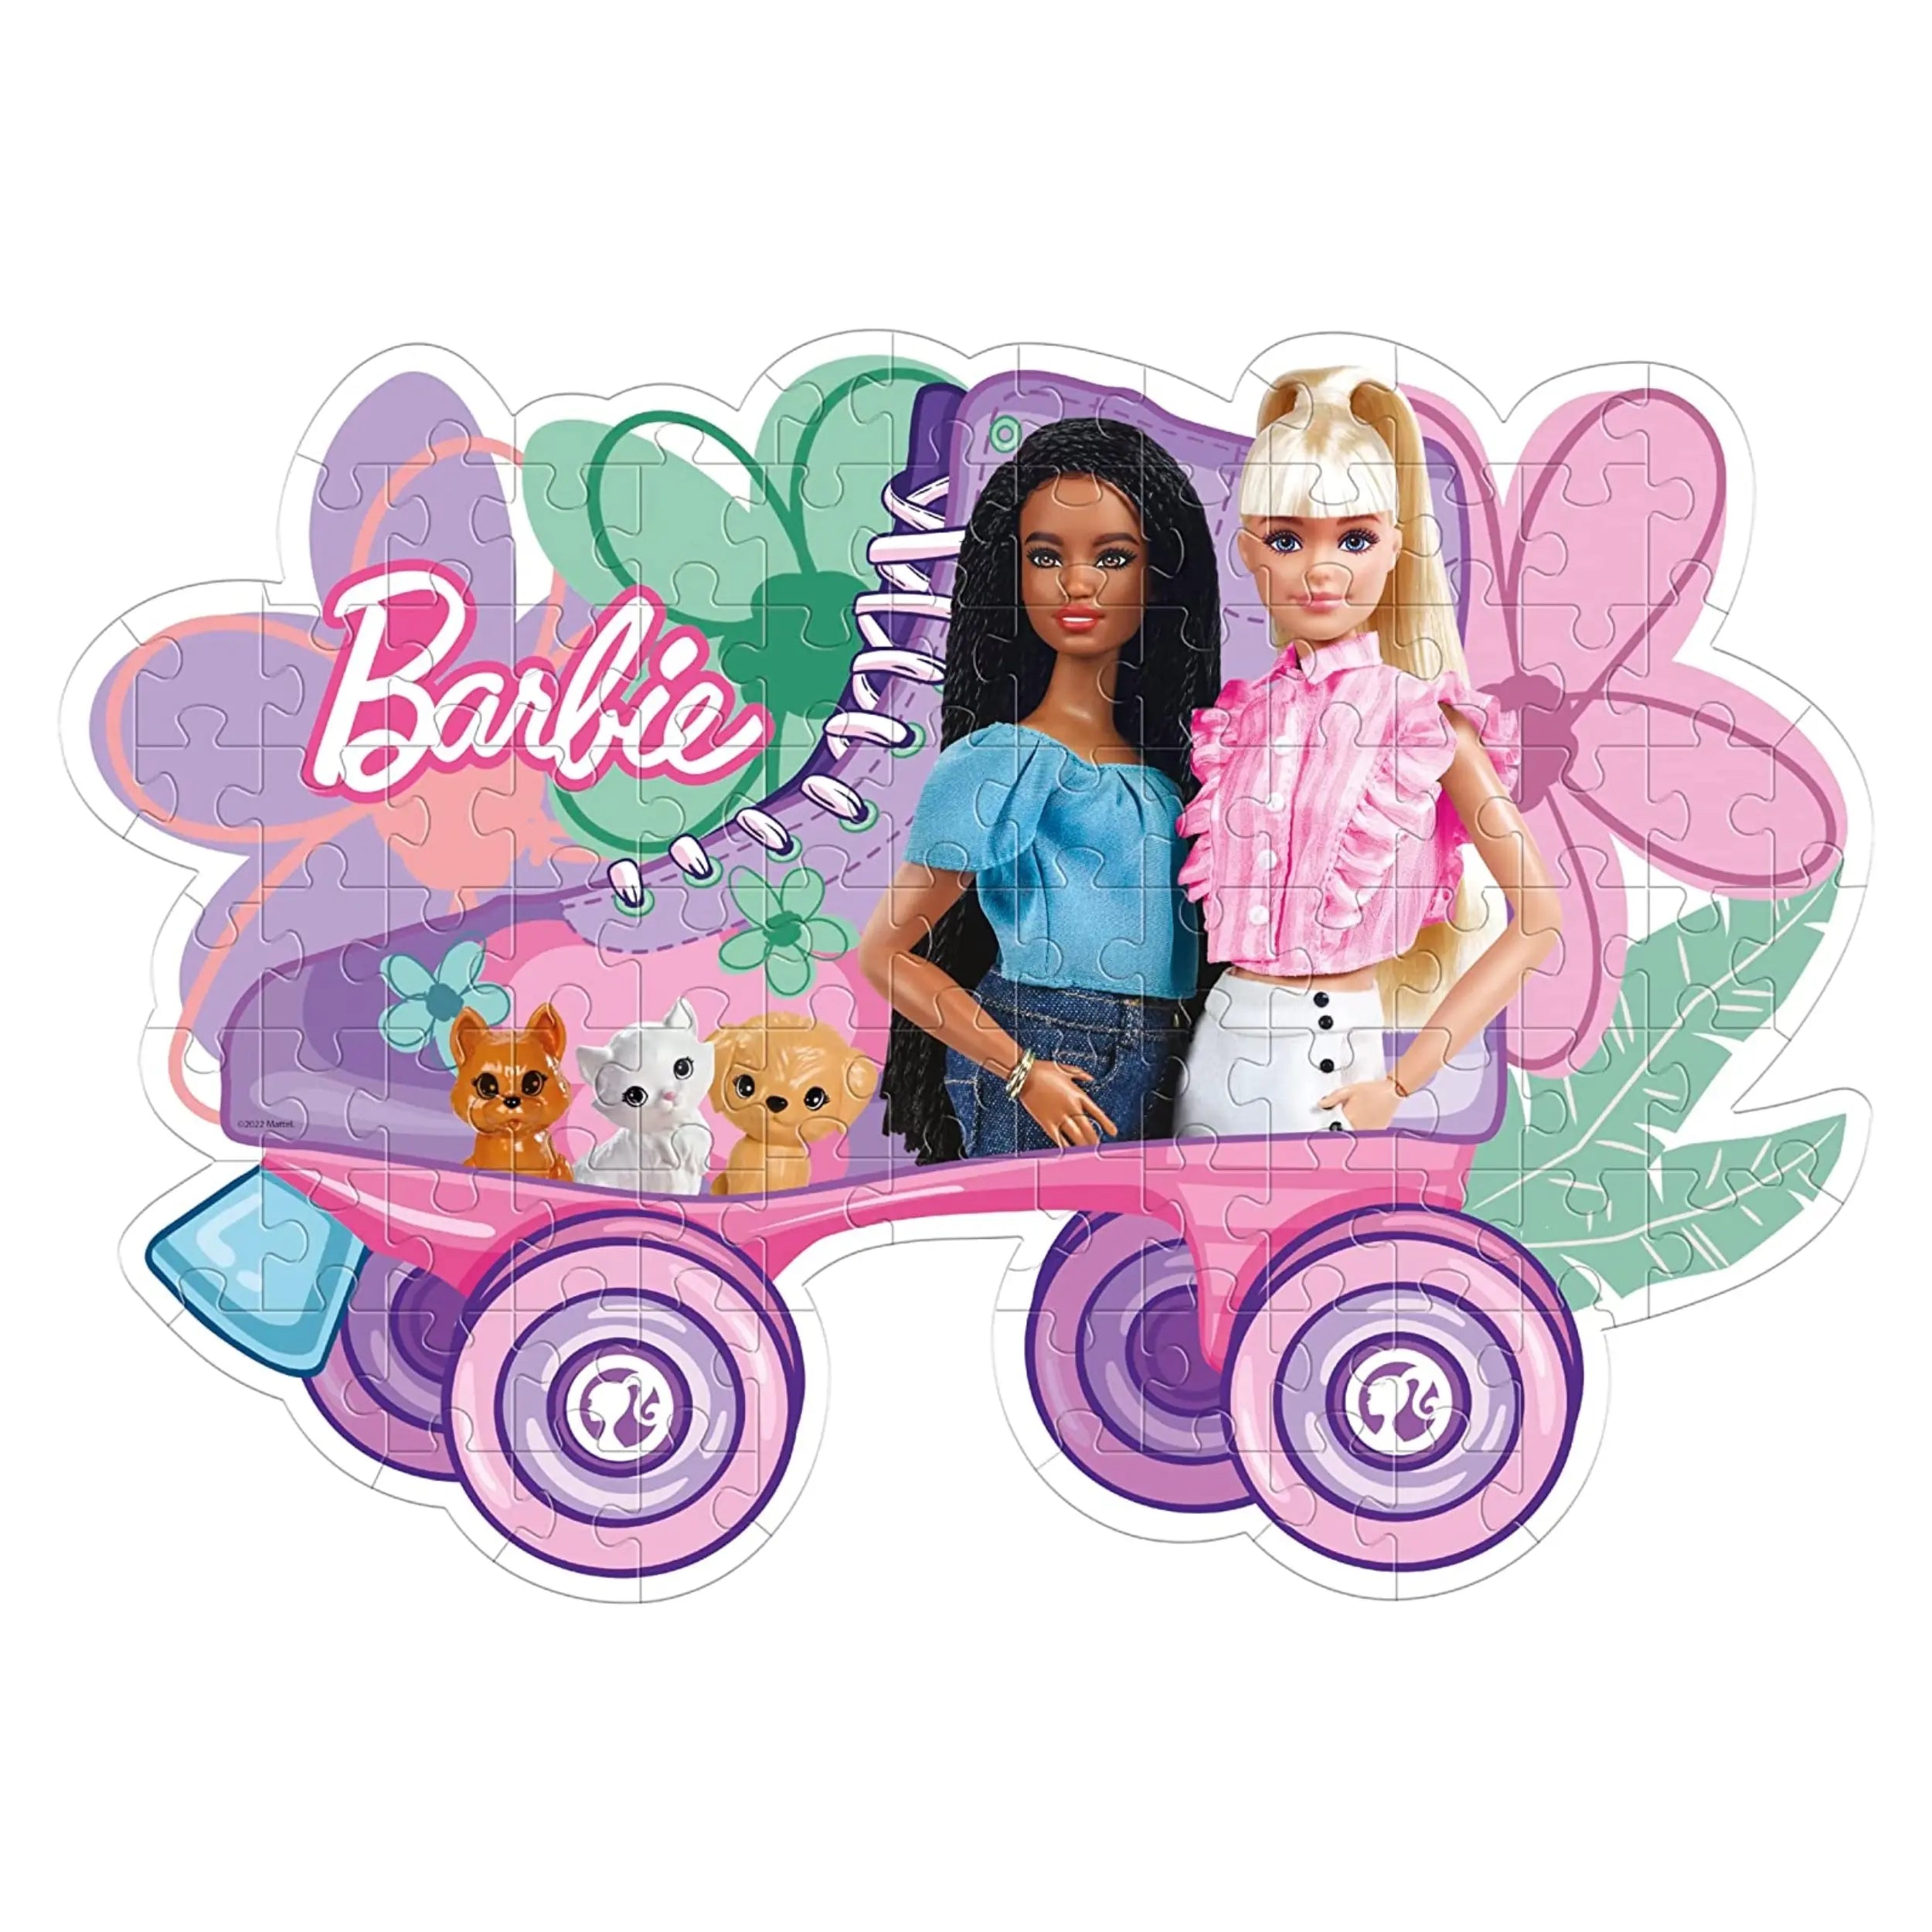 Clementoni - Barbie Puzzle 104 Pieces SuperColor Collection